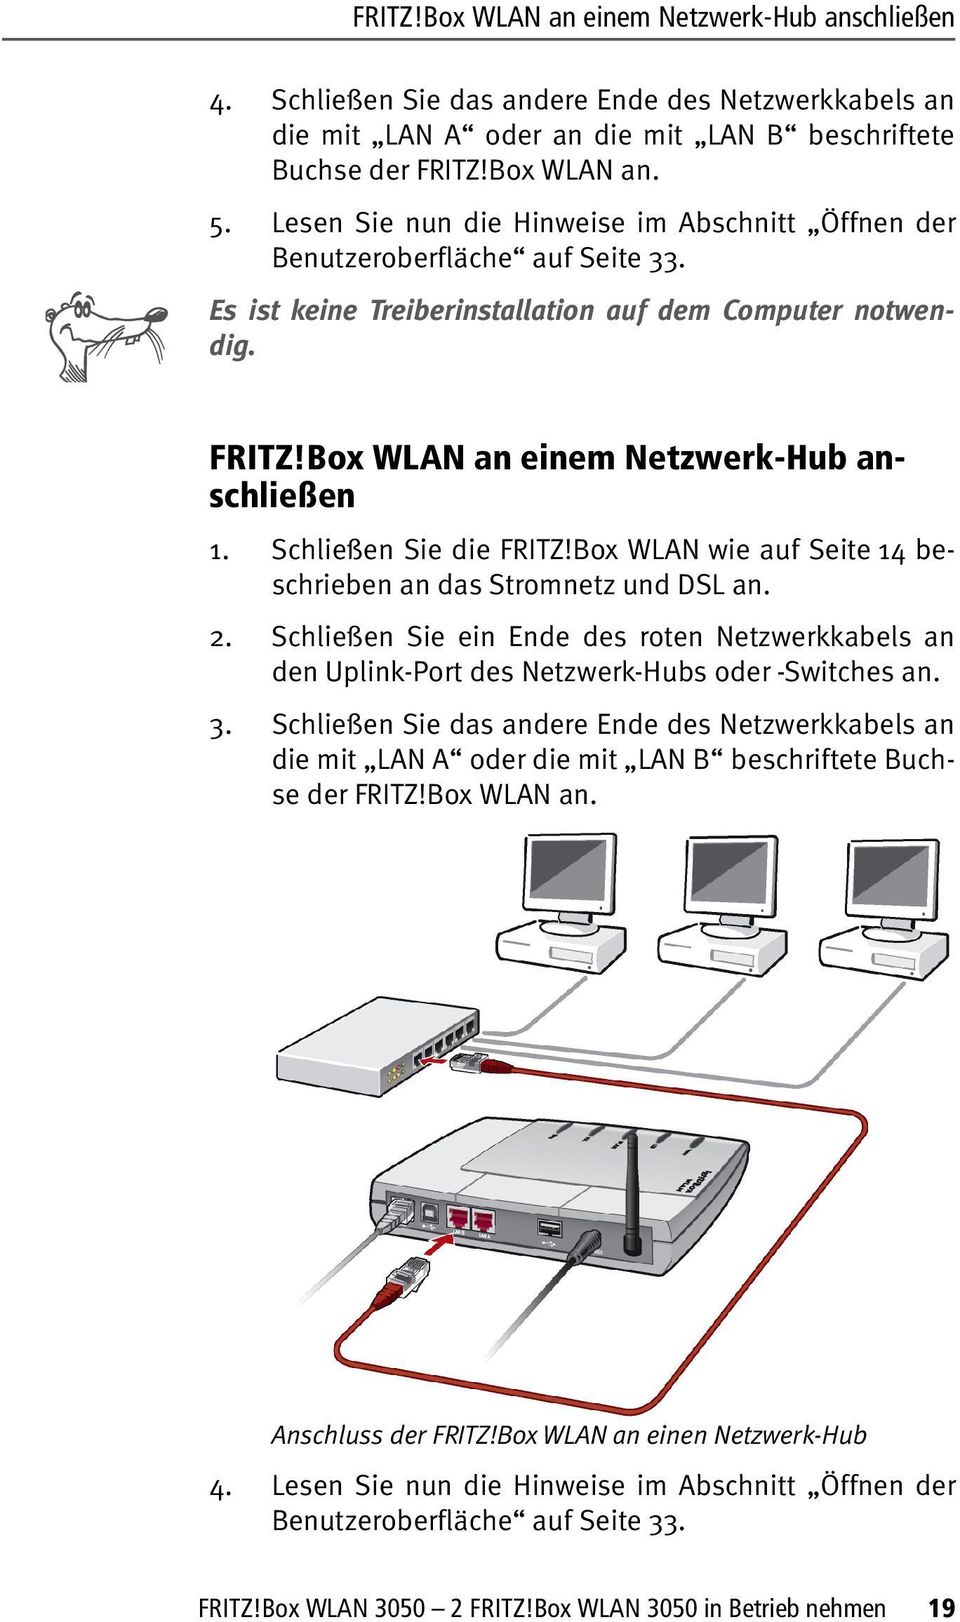 Schließen Sie die FRITZ!Box WLAN wie auf Seite 14 beschrieben an das Stromnetz und DSL an. 2. Schließen Sie ein Ende des roten Netzwerkkabels an den Uplink-Port des Netzwerk-Hubs oder -Switches an. 3.